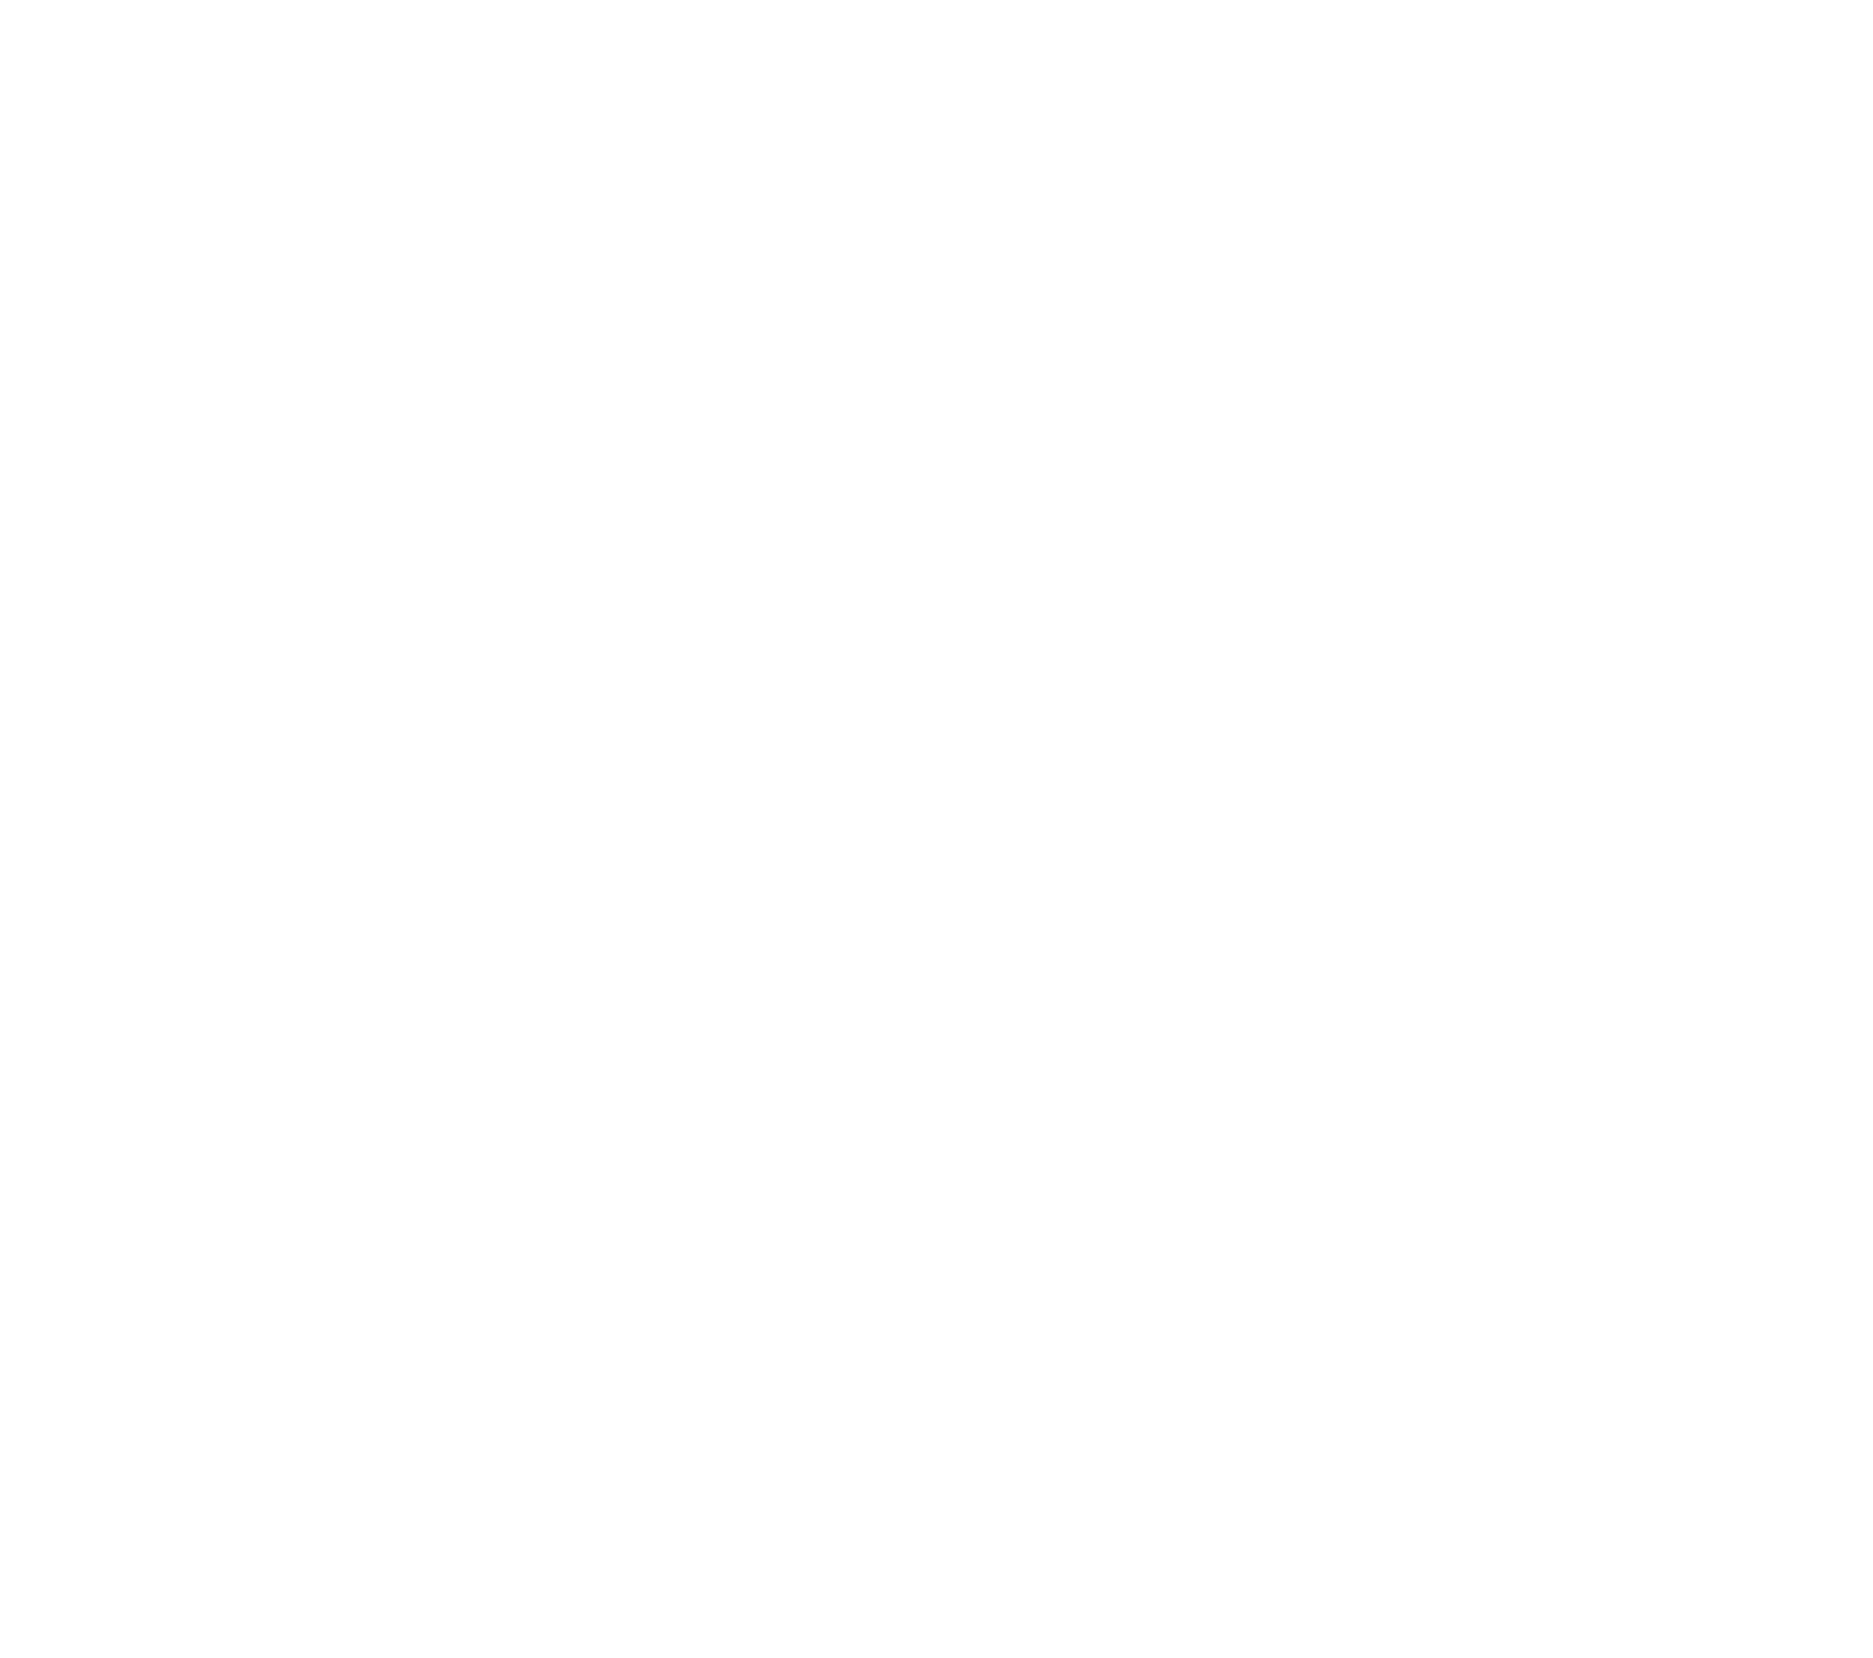 SHRIEY